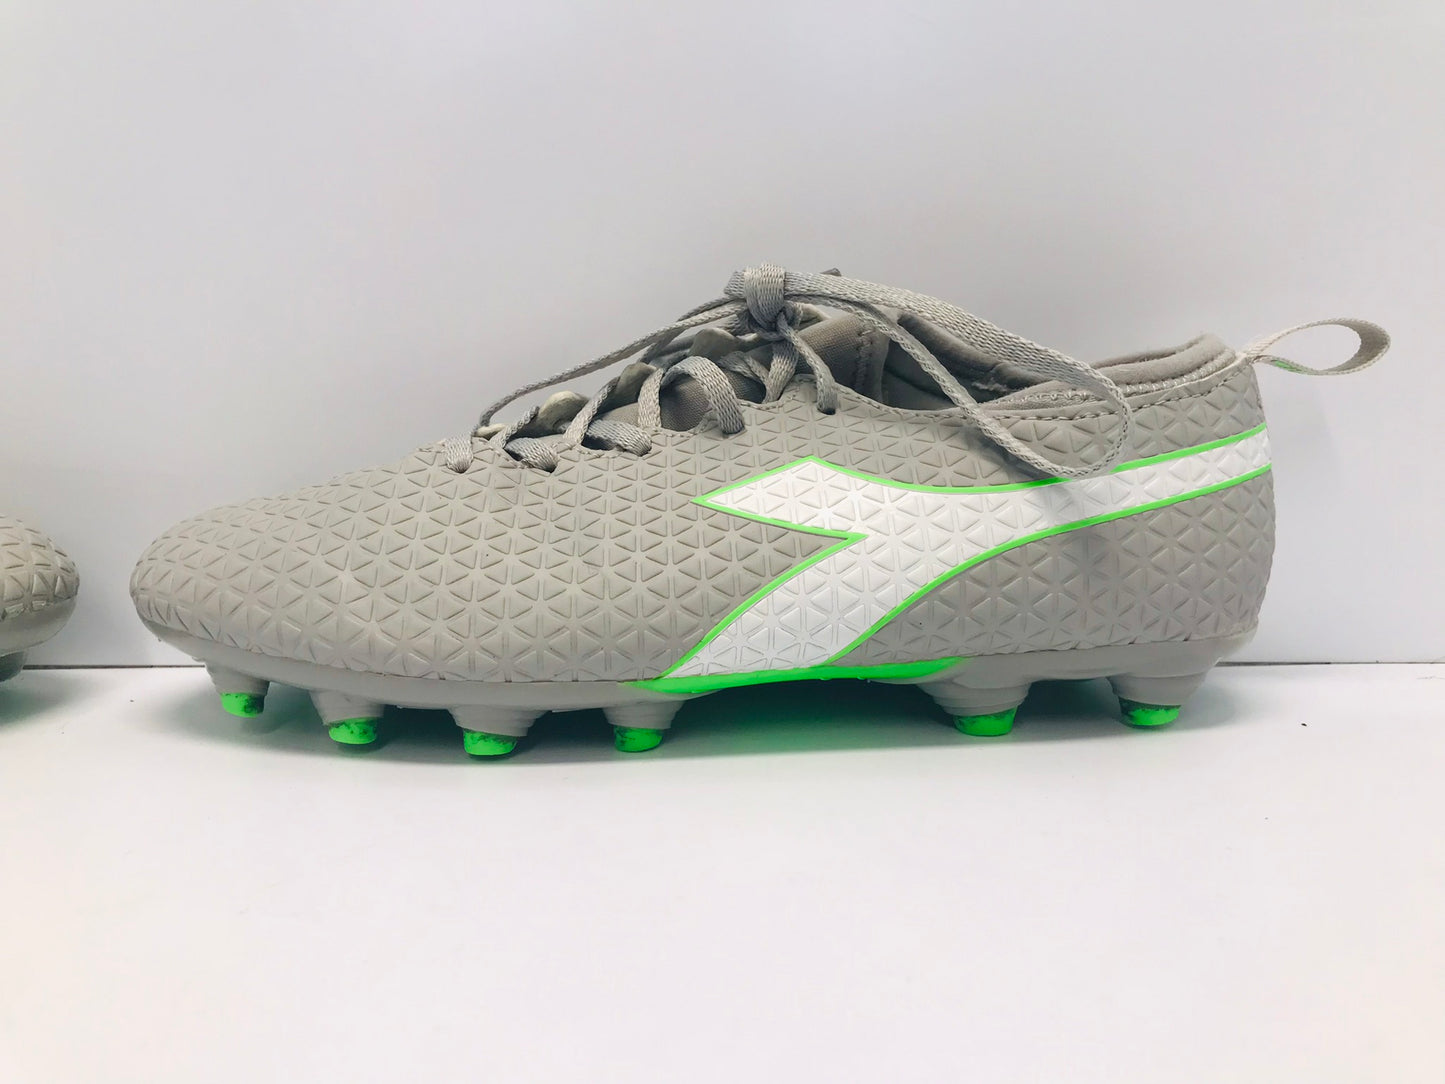 Soccer Shoes Cleats Men's Size 8.5 Diadora Grey Lime White Excellent